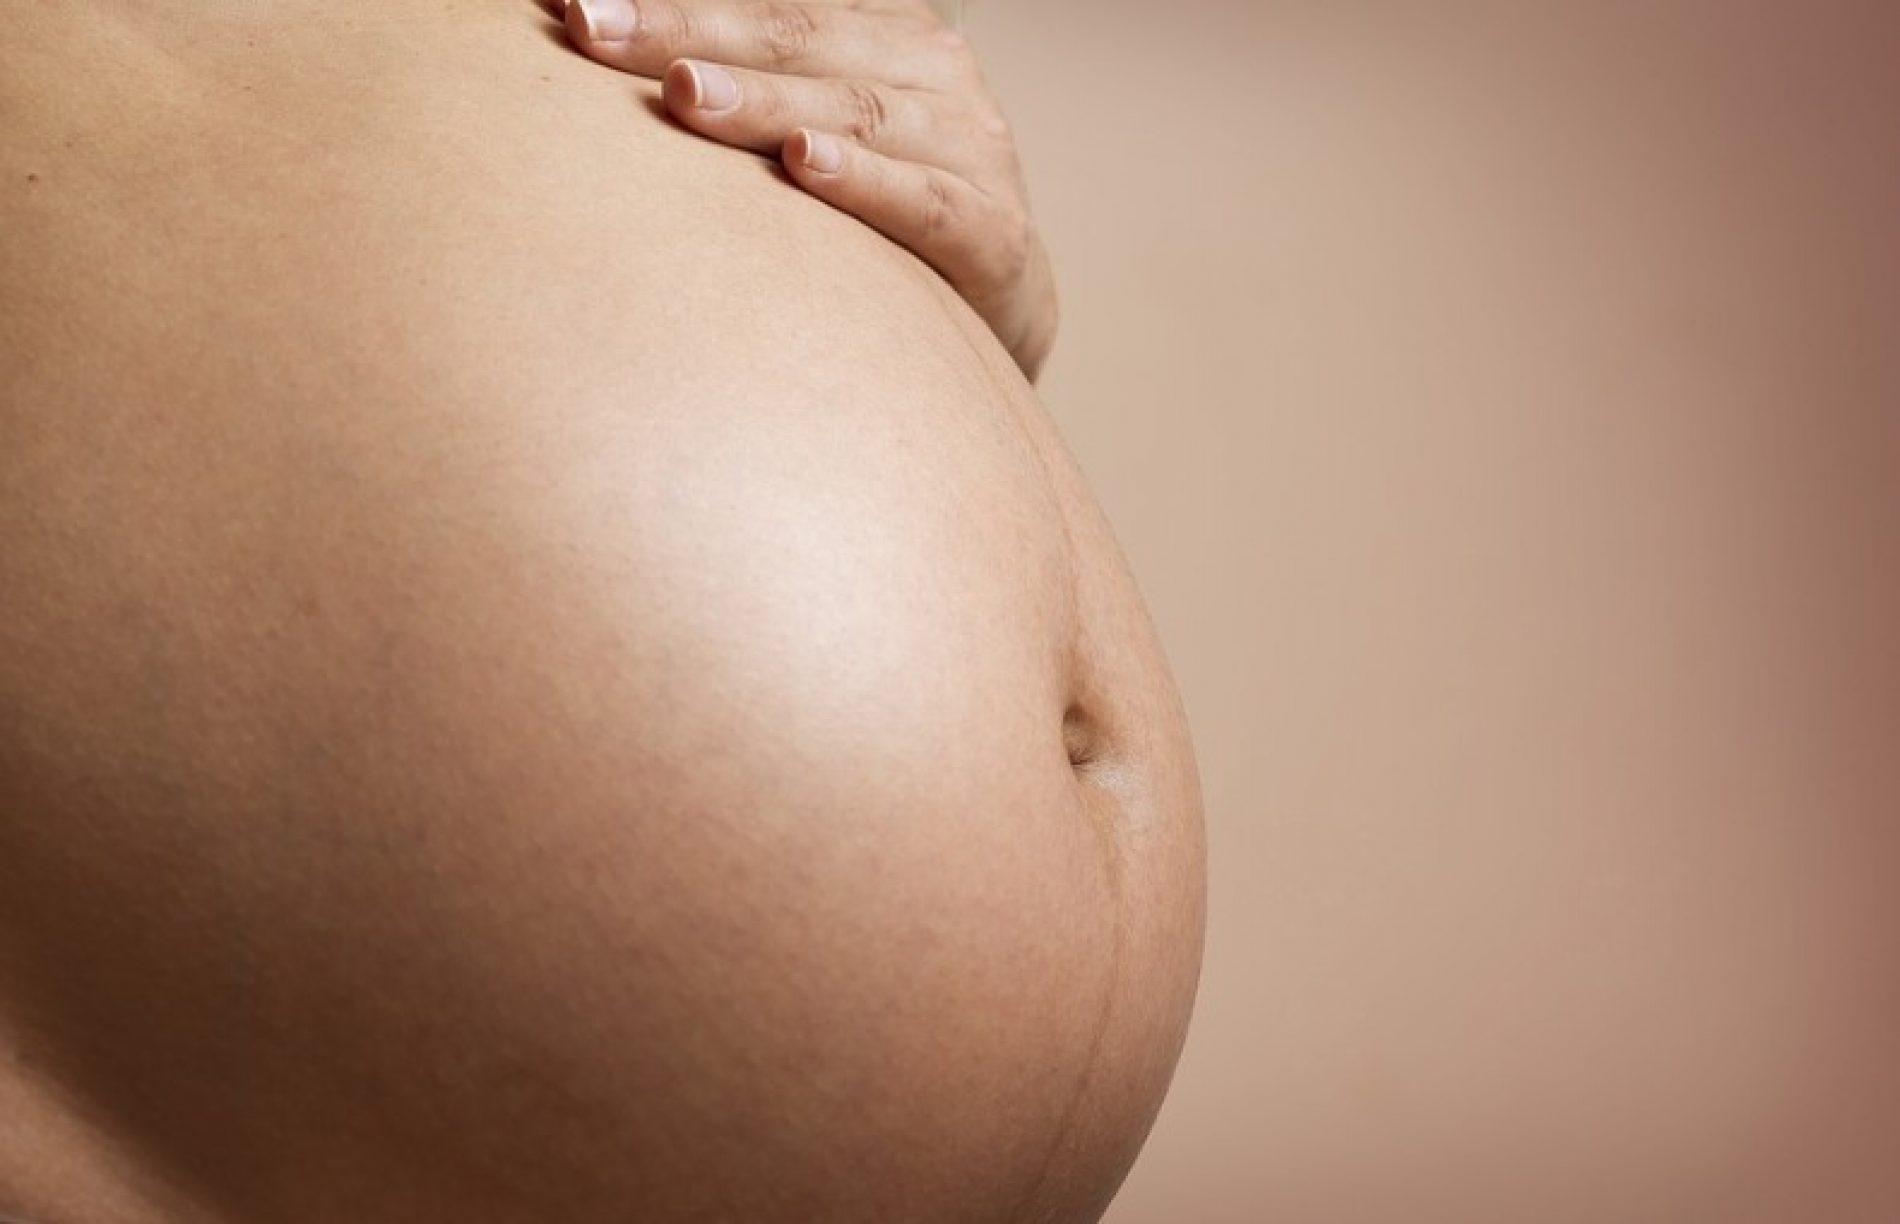 Se engravidar, trabalhadora temporária não terá direito à estabilidade